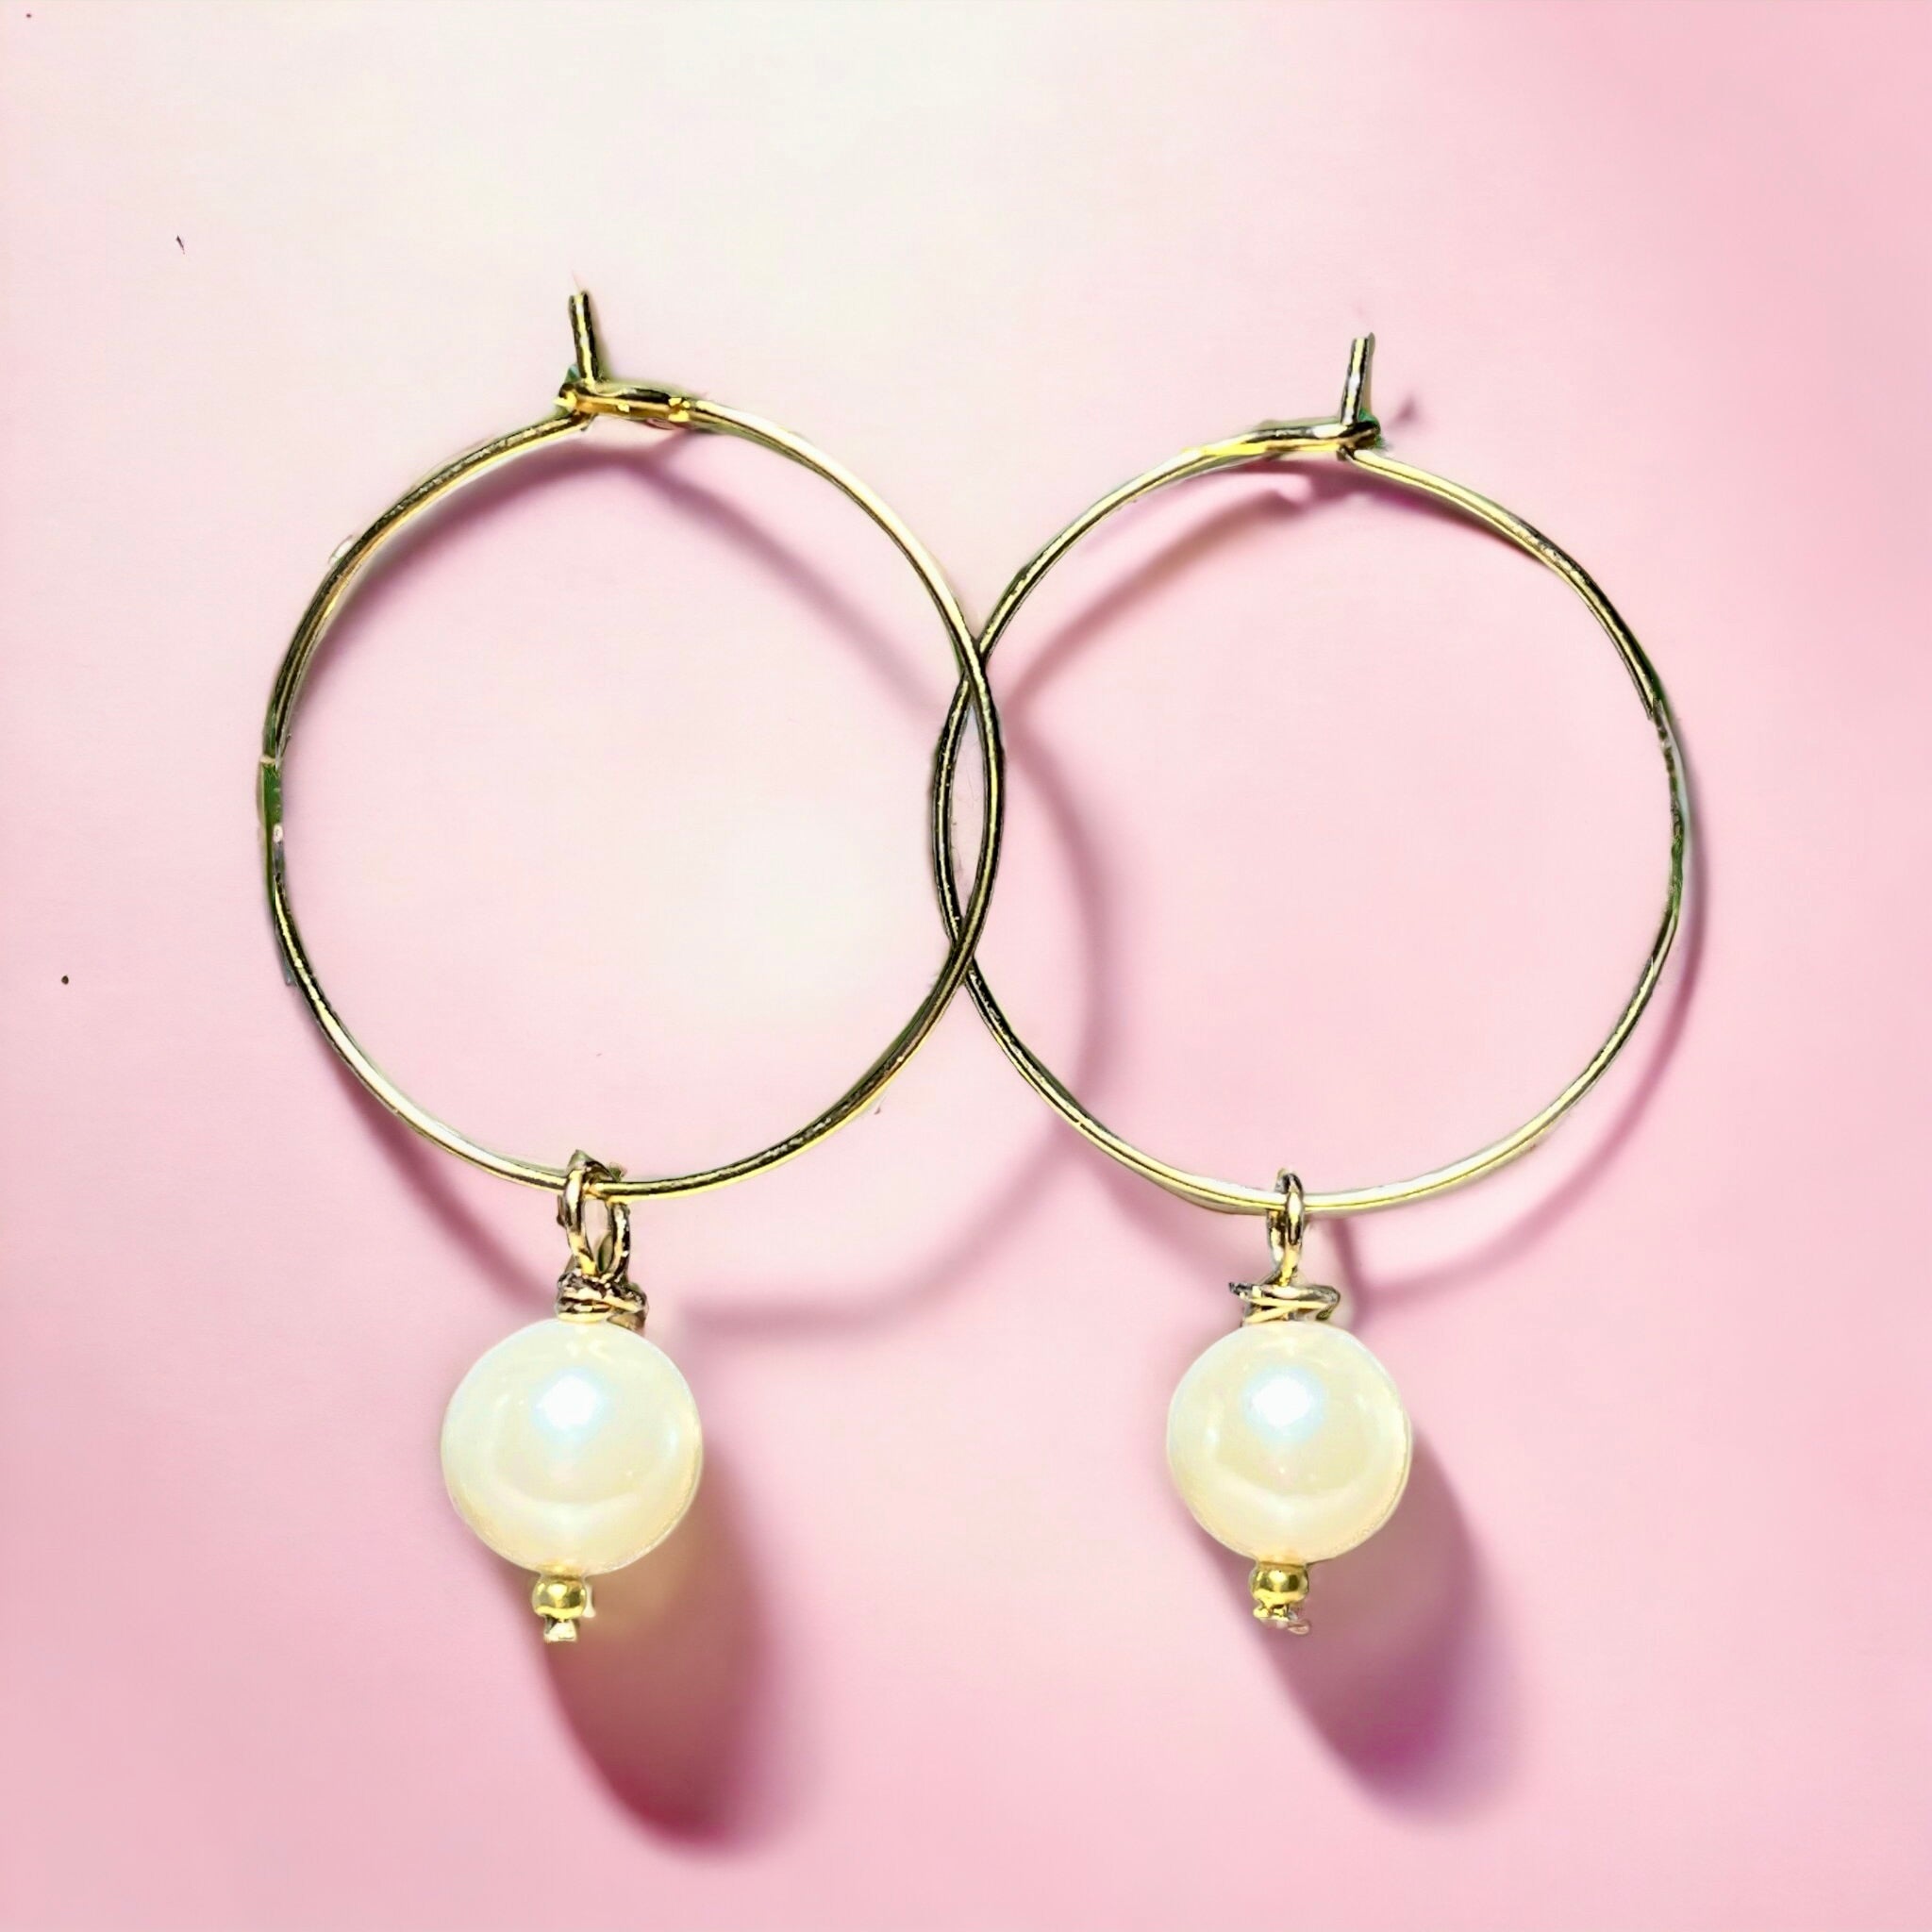 Boucles d'oreilles "ELARA" perle de nacre blanche dorées or fin